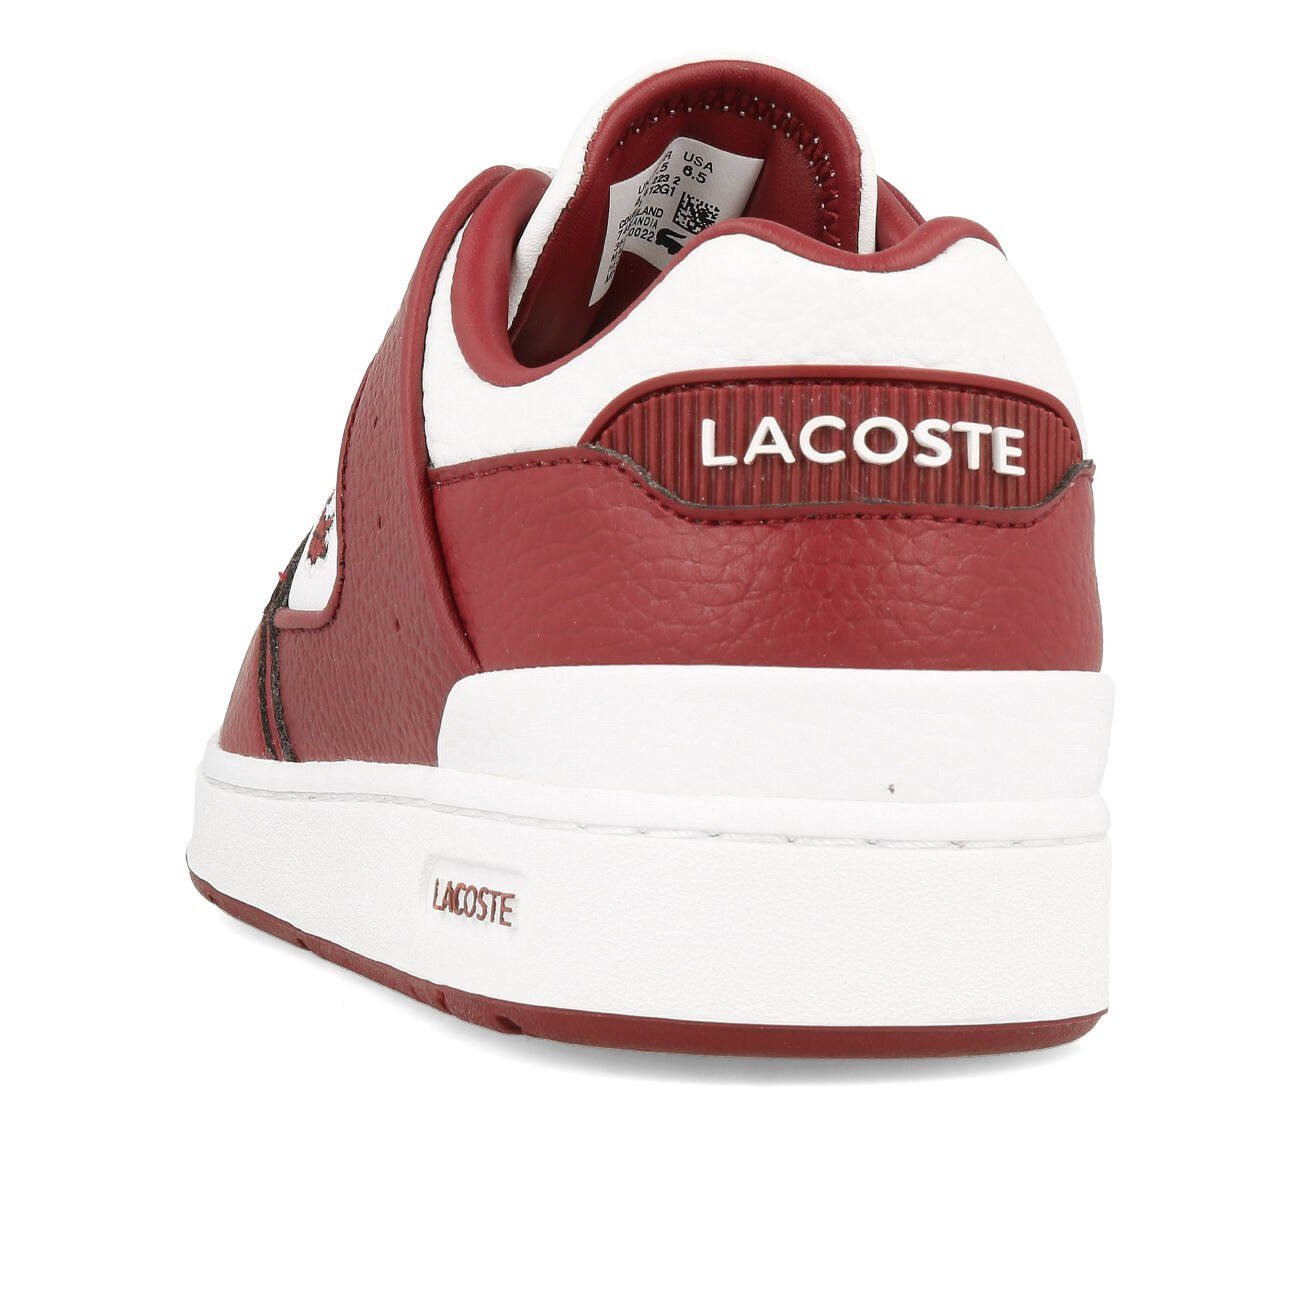 Lacoste Lacoste SFA Sneaker Burgundy Cage White Court 223 2 Damen Burgundy / White